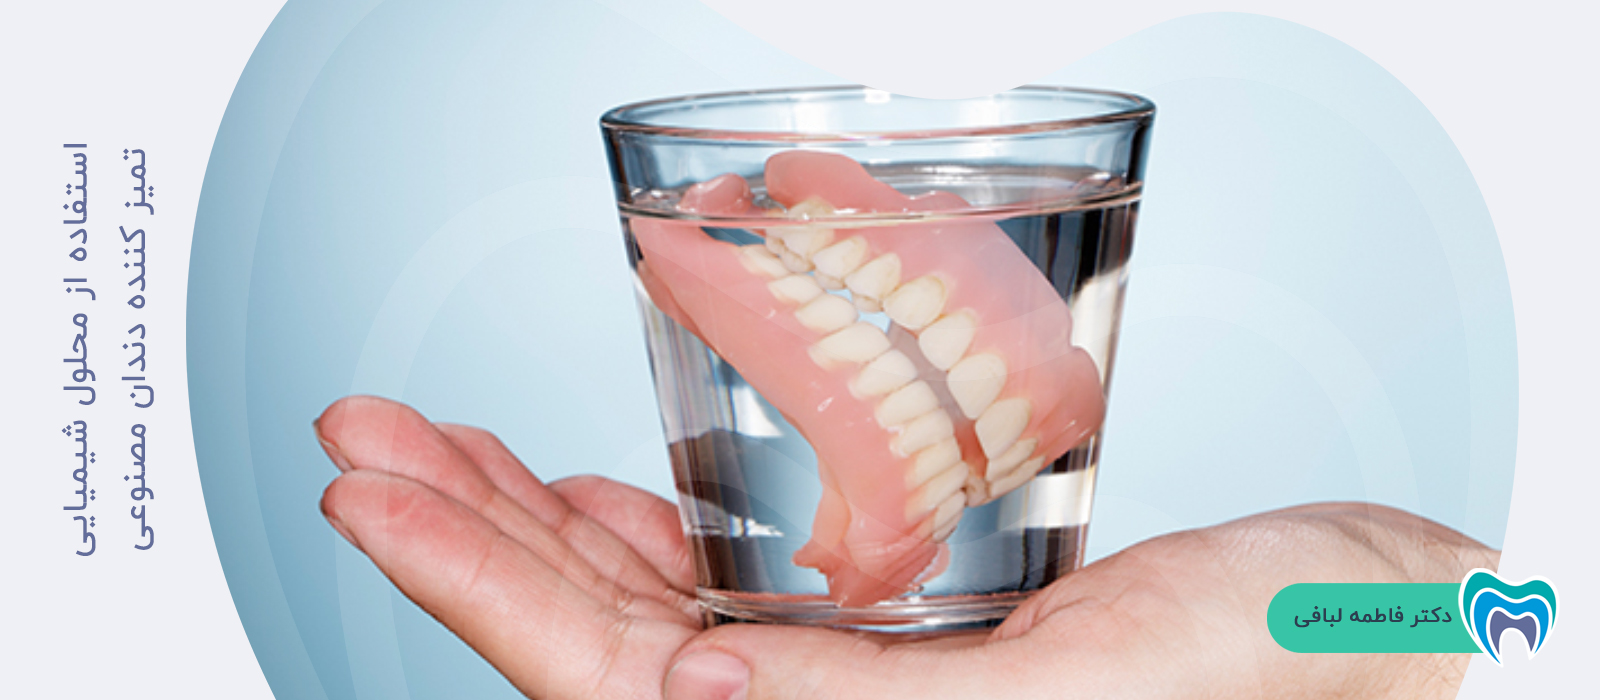 چگونه از محلول شیمیایی برای تمیز کردن دندان مصنوعی استفاده کنم؟